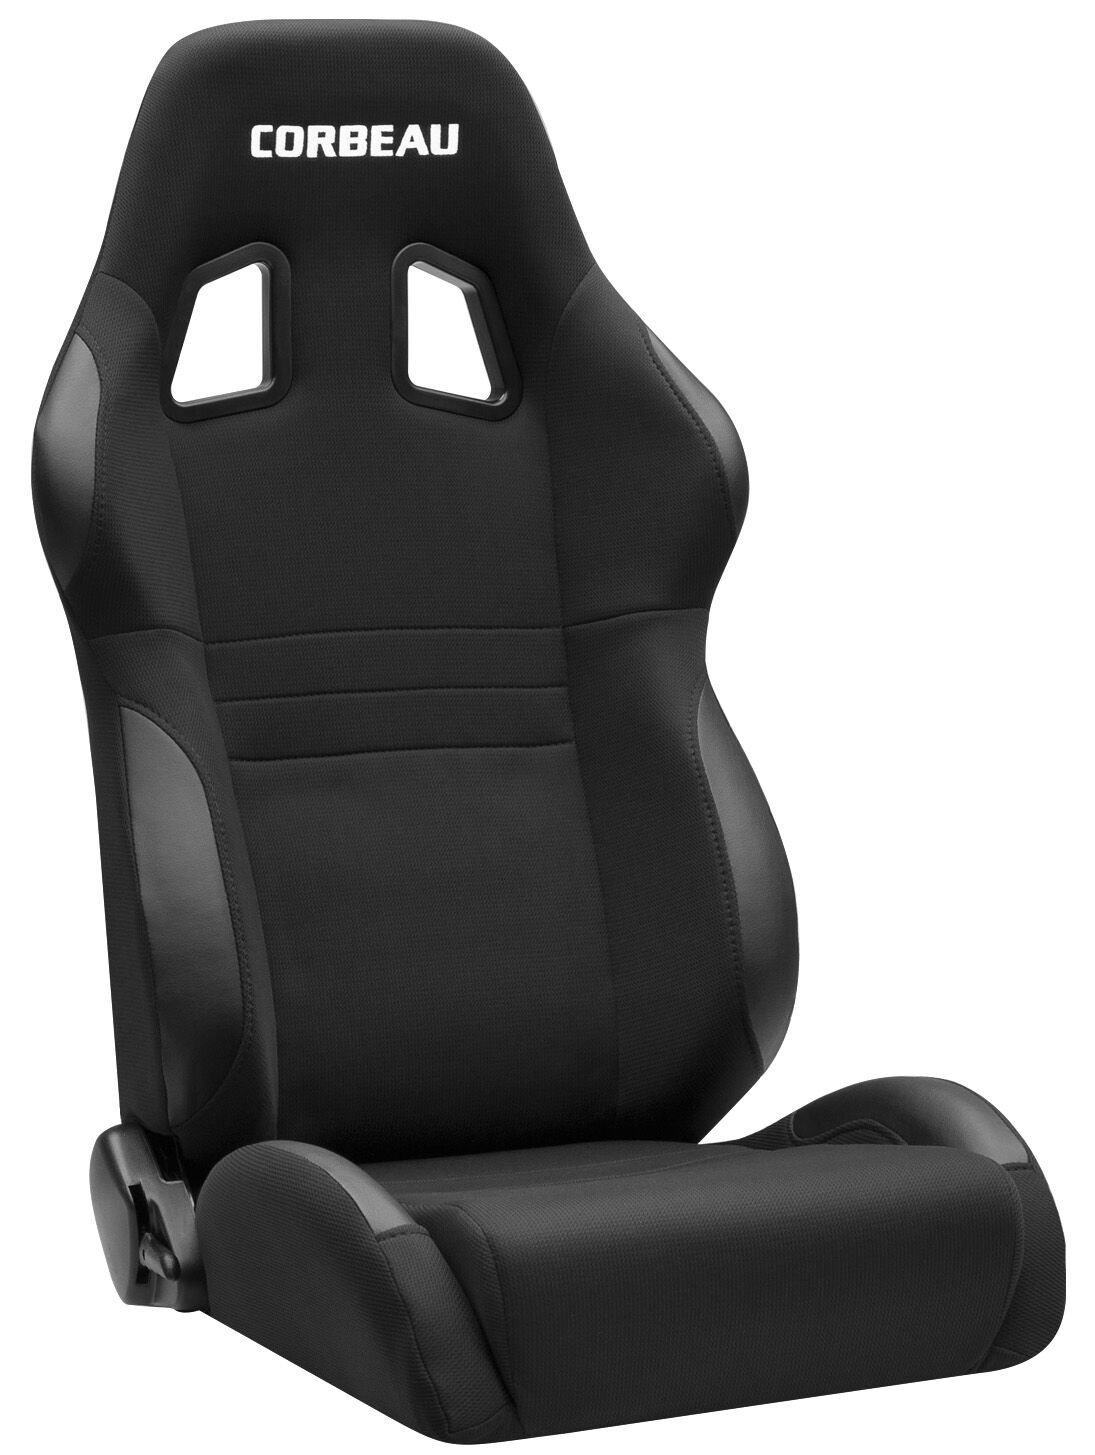 Corbeau A4 Seats - Black Cloth